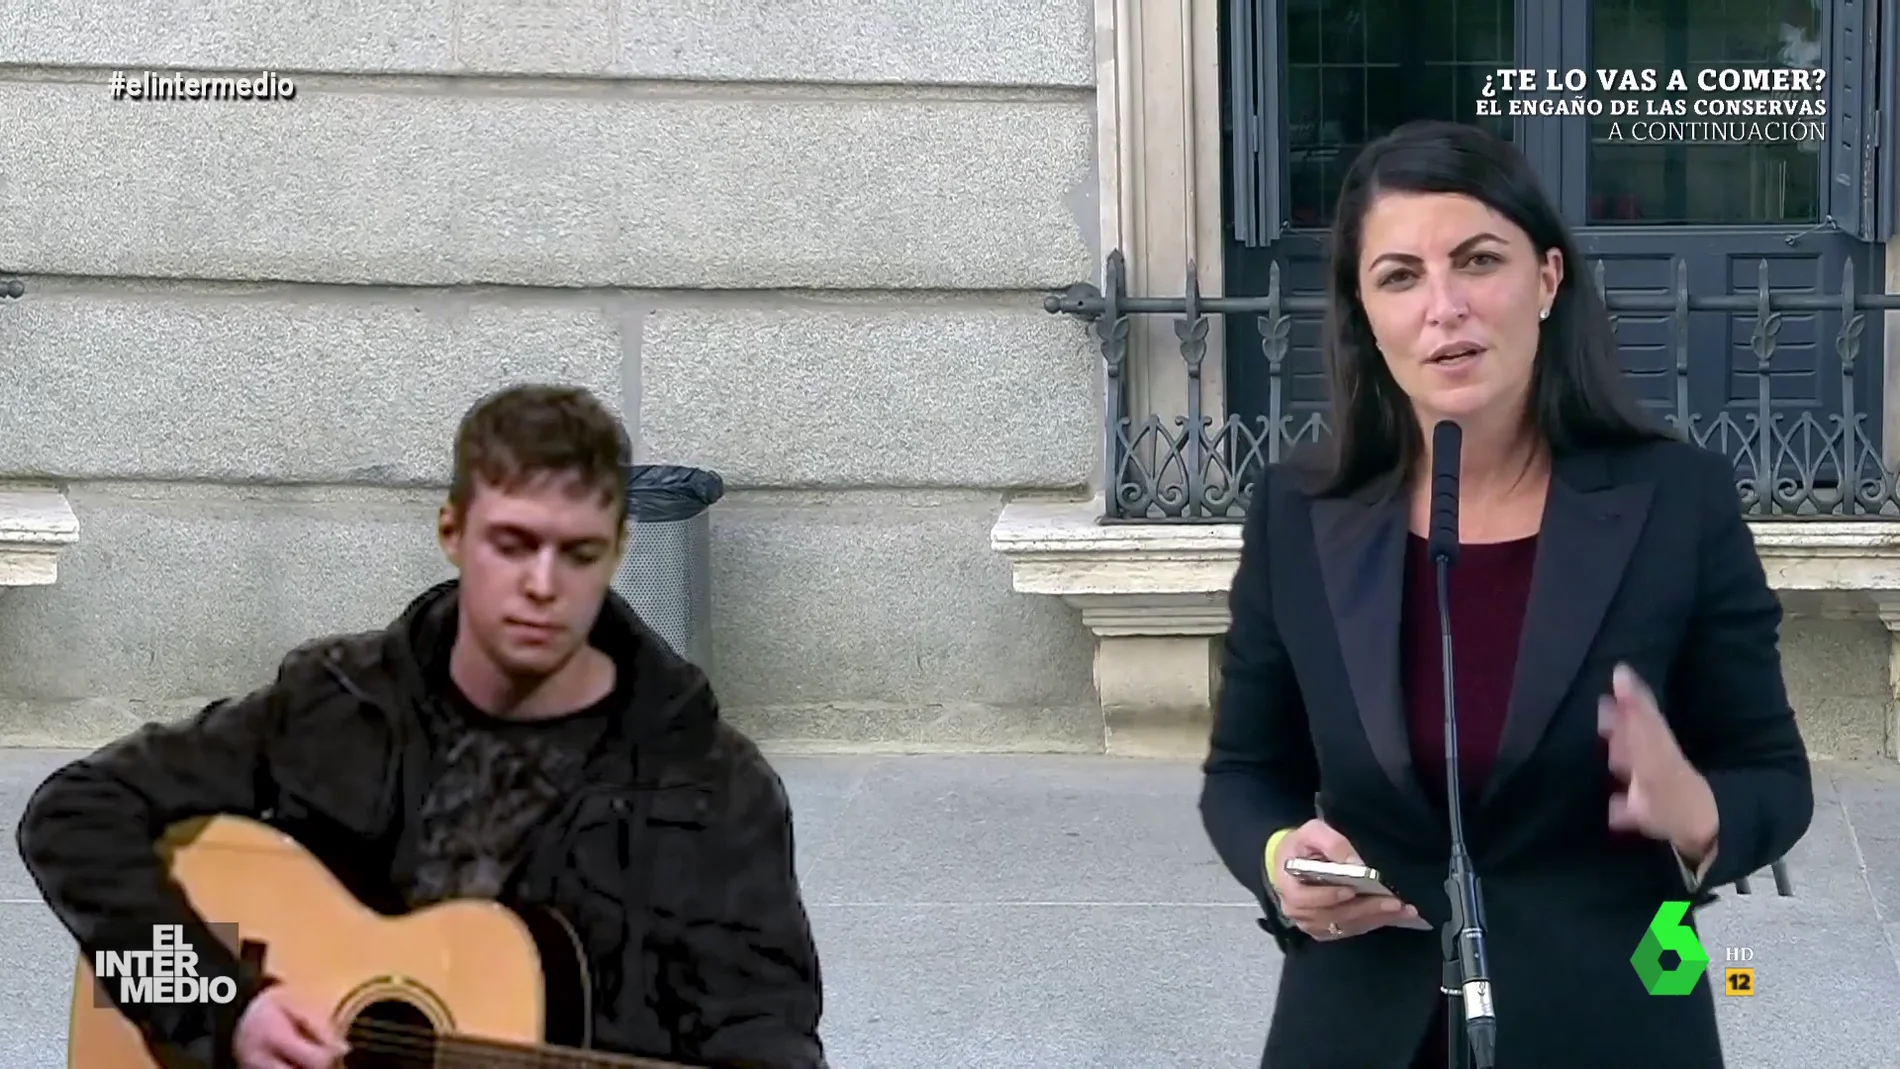 Vídeo manipulado - El temazo de Olona en plena calle al ritmo de una guitarra española: "Dar oxígeno"